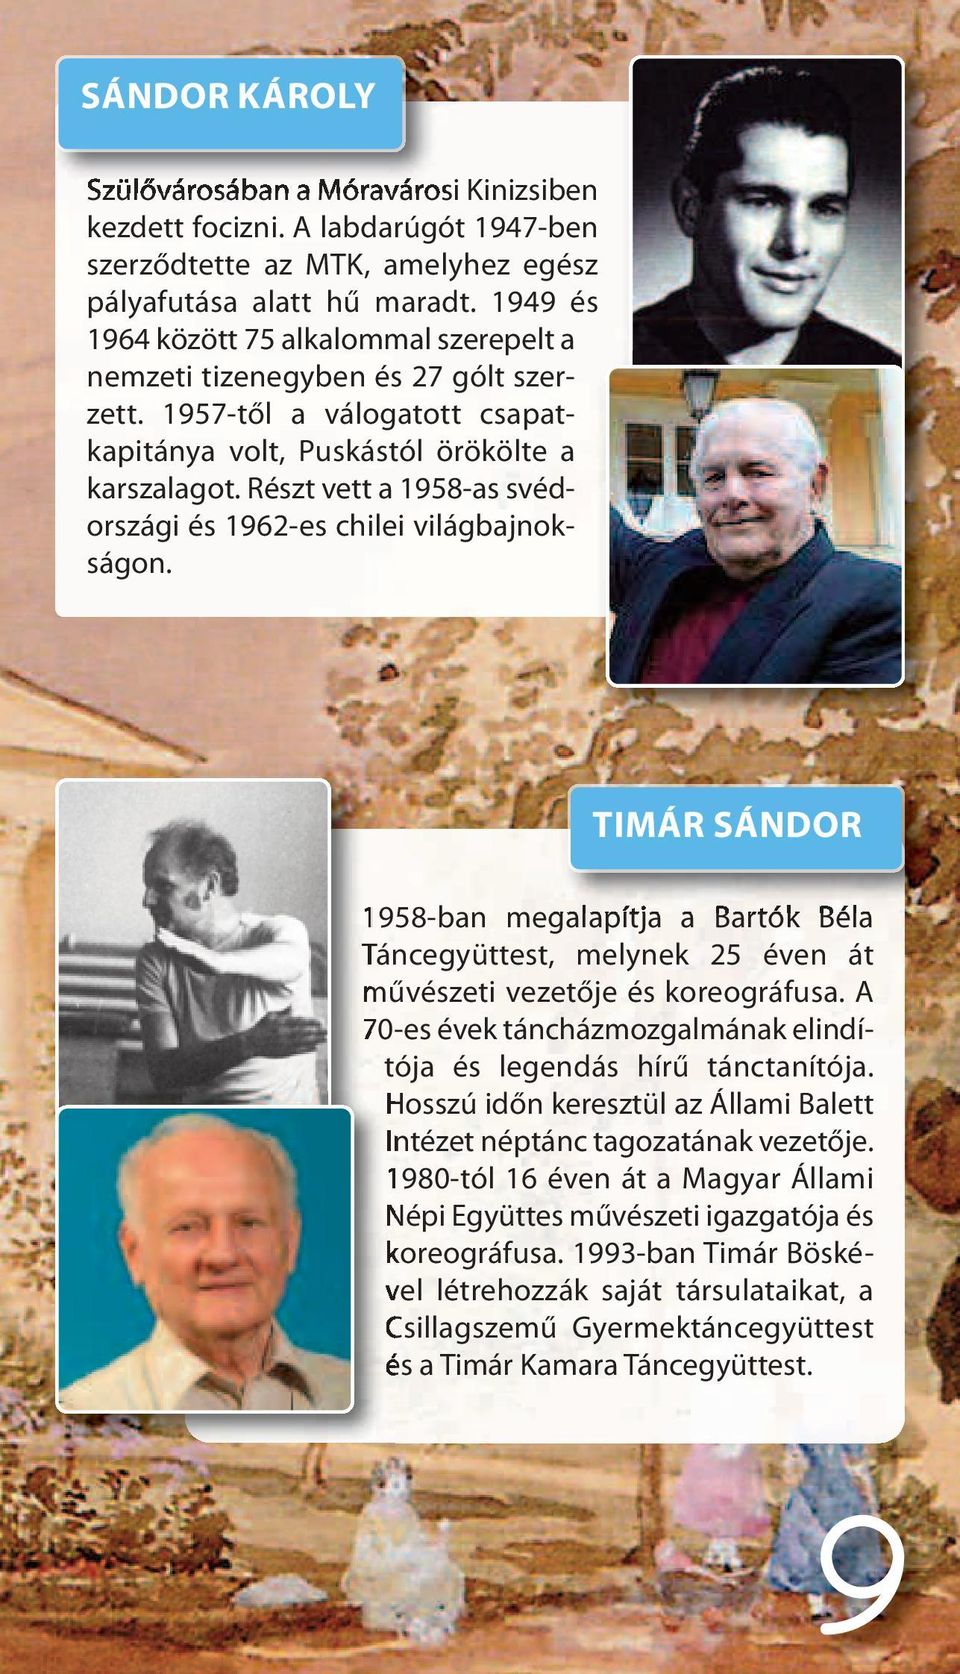 Részt vett a 1958-as svédországi és 1962-es chilei világbajnokságon. TIMÁR SÁNDOR 1958-ban megalapítja a Bartók Béla Táncegyüttest, melynek 25 éven át művészeti vezetője és koreográfusa.